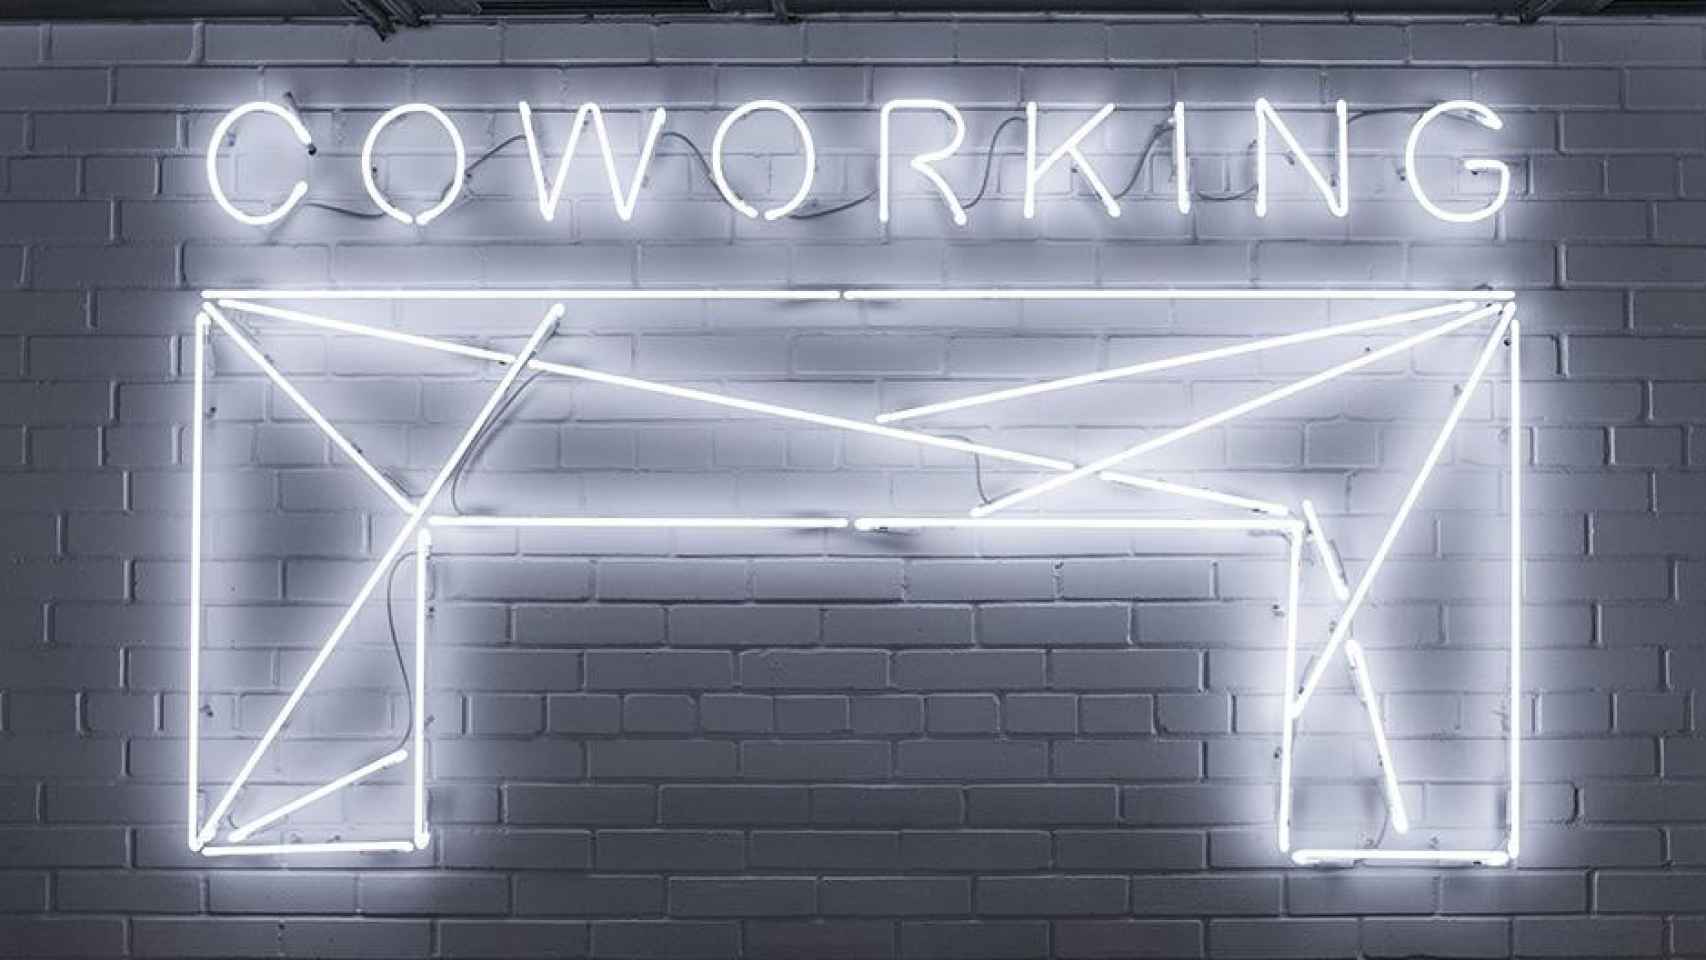 Espacio de 'coworking', una de las tendencias que están cambiando la manera de trabajar / UNSPLASH